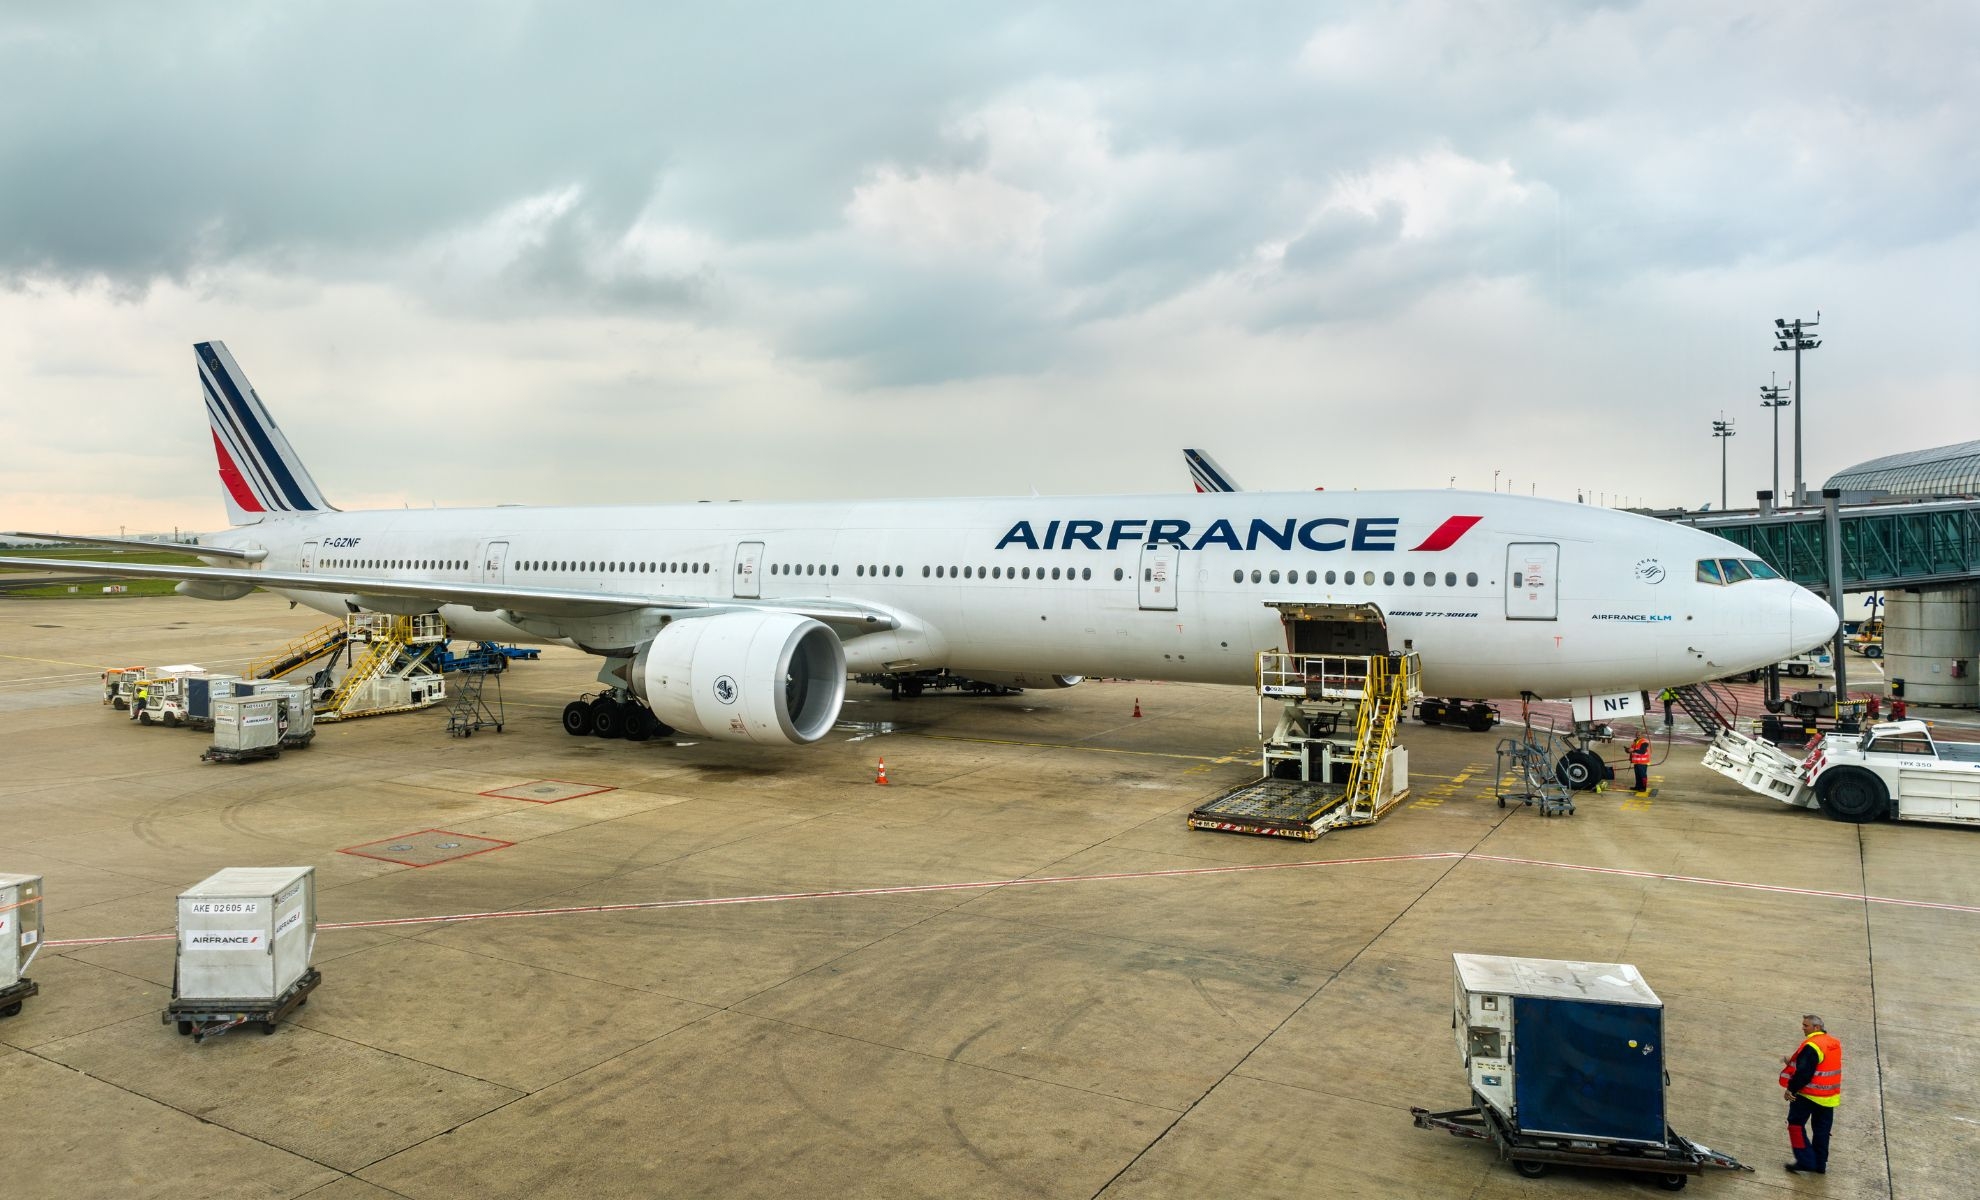 Avion de la compagnie aérienne Air France dans un aéroport